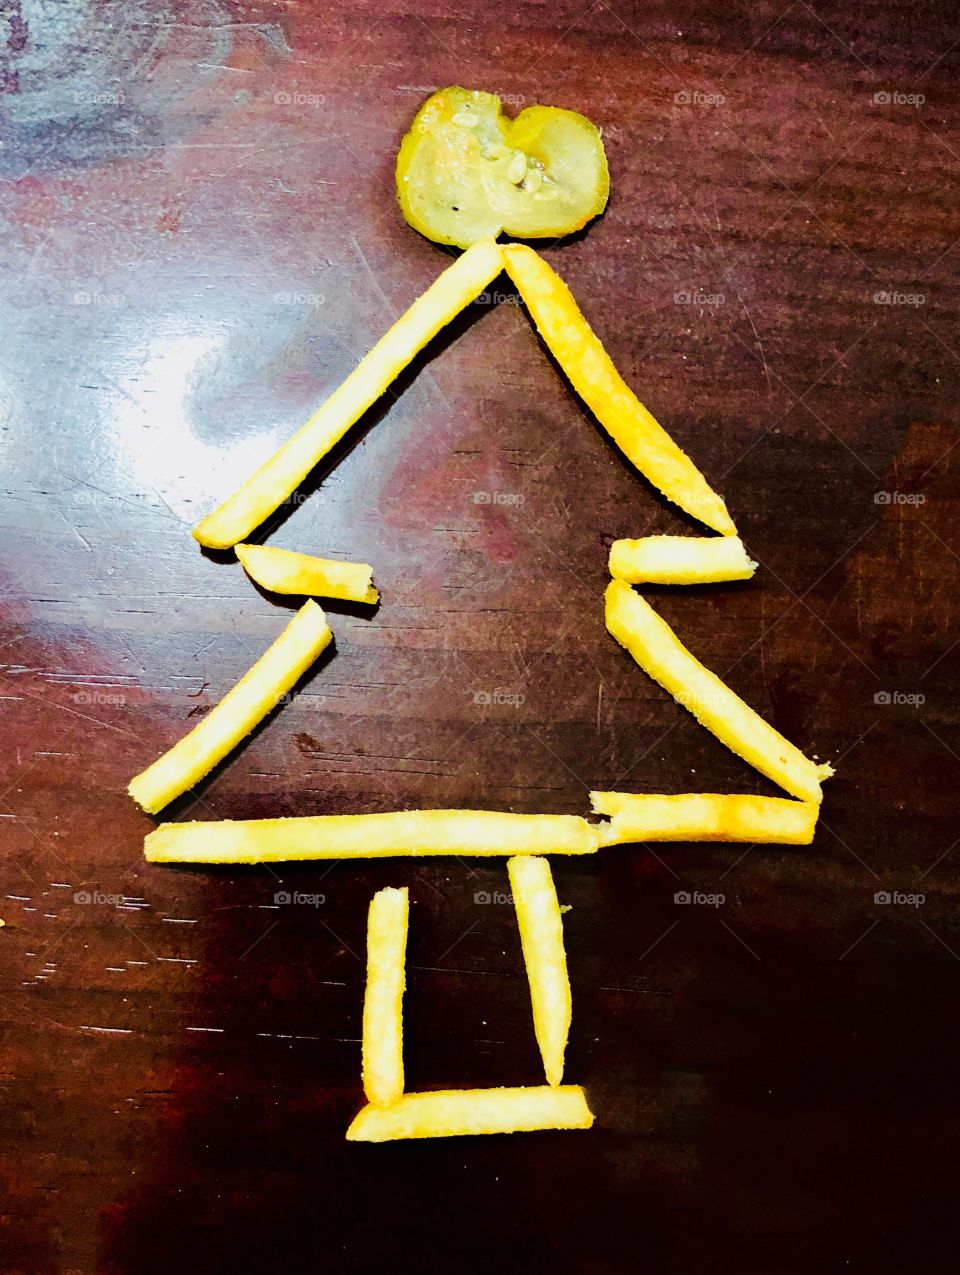 Fry Christmas tree (Christmas day) 